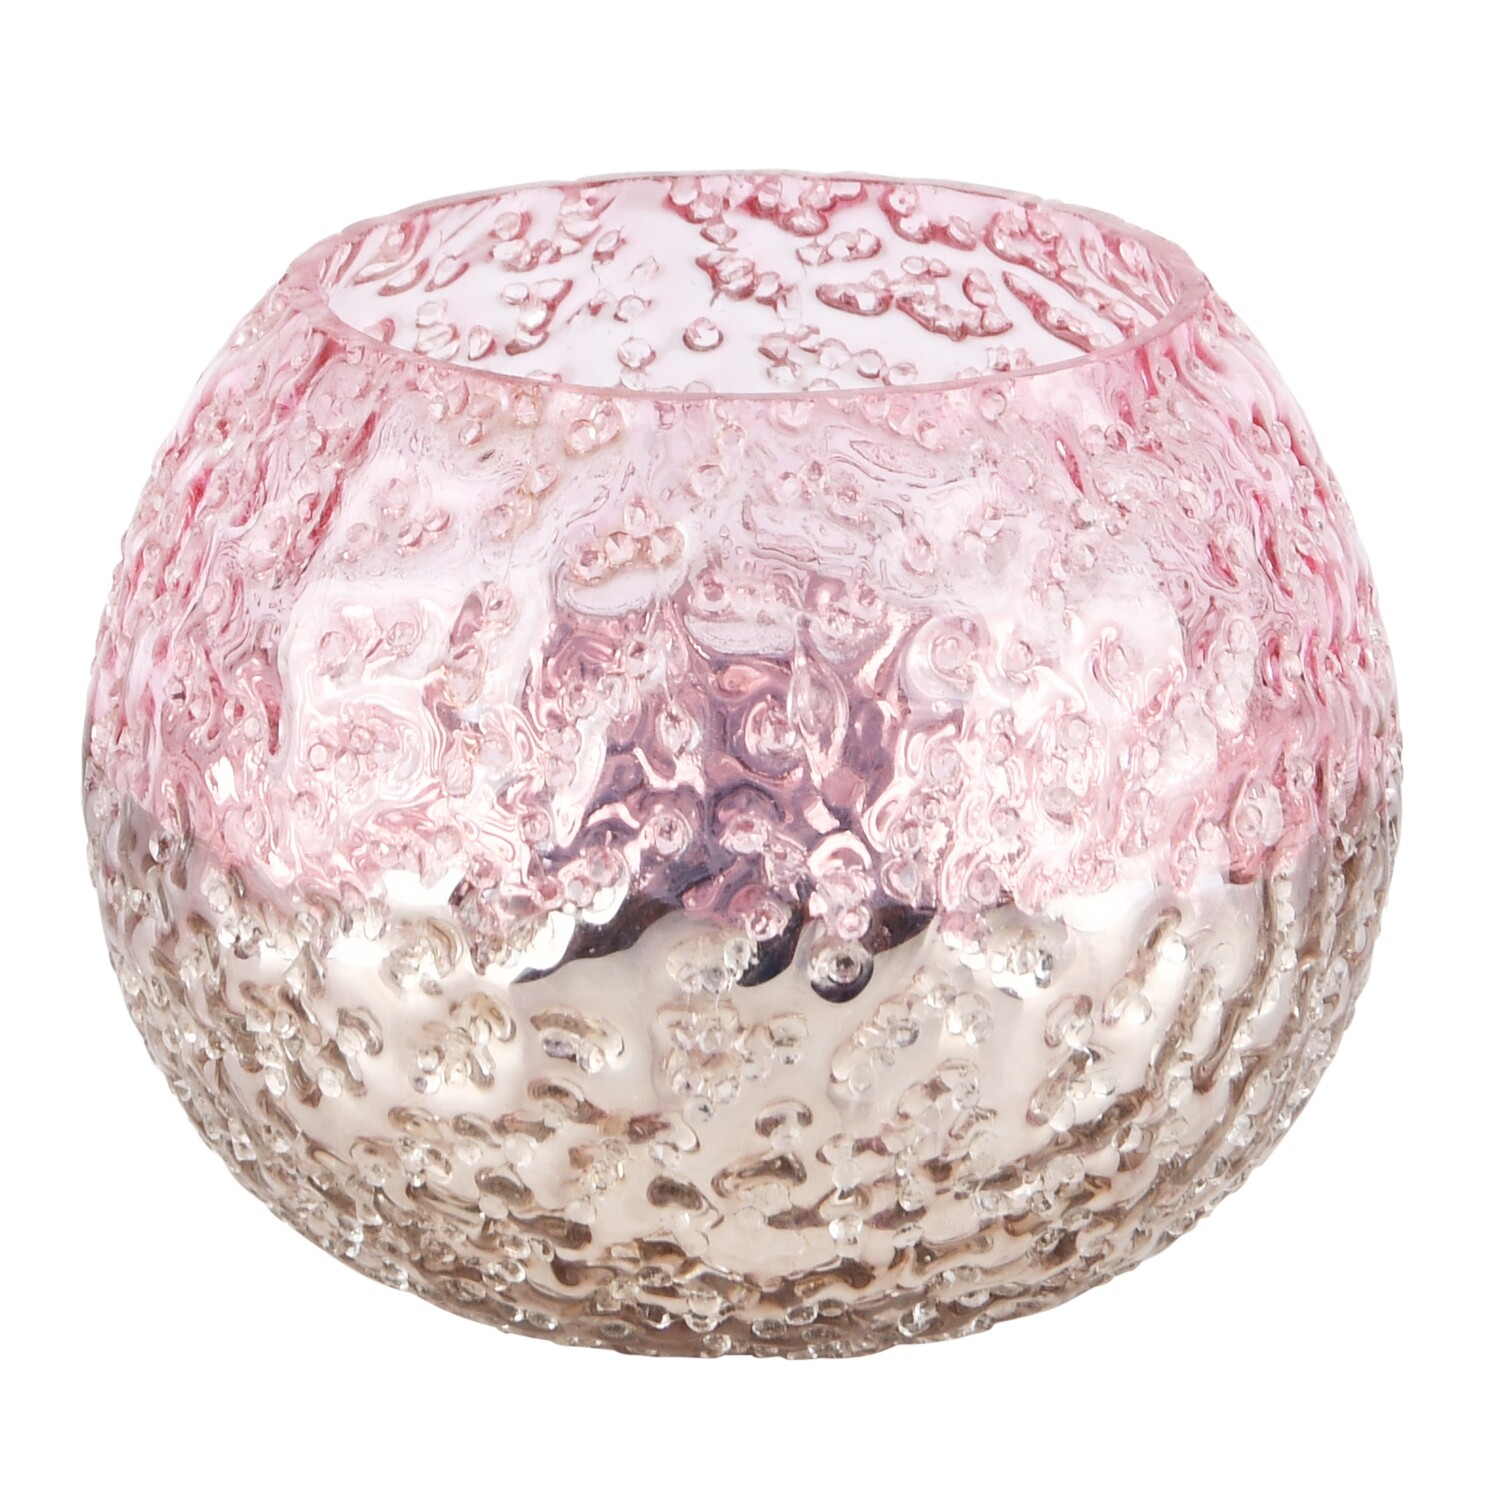 Theelichtbol 'Crinkled' roze/zilver glas Klein